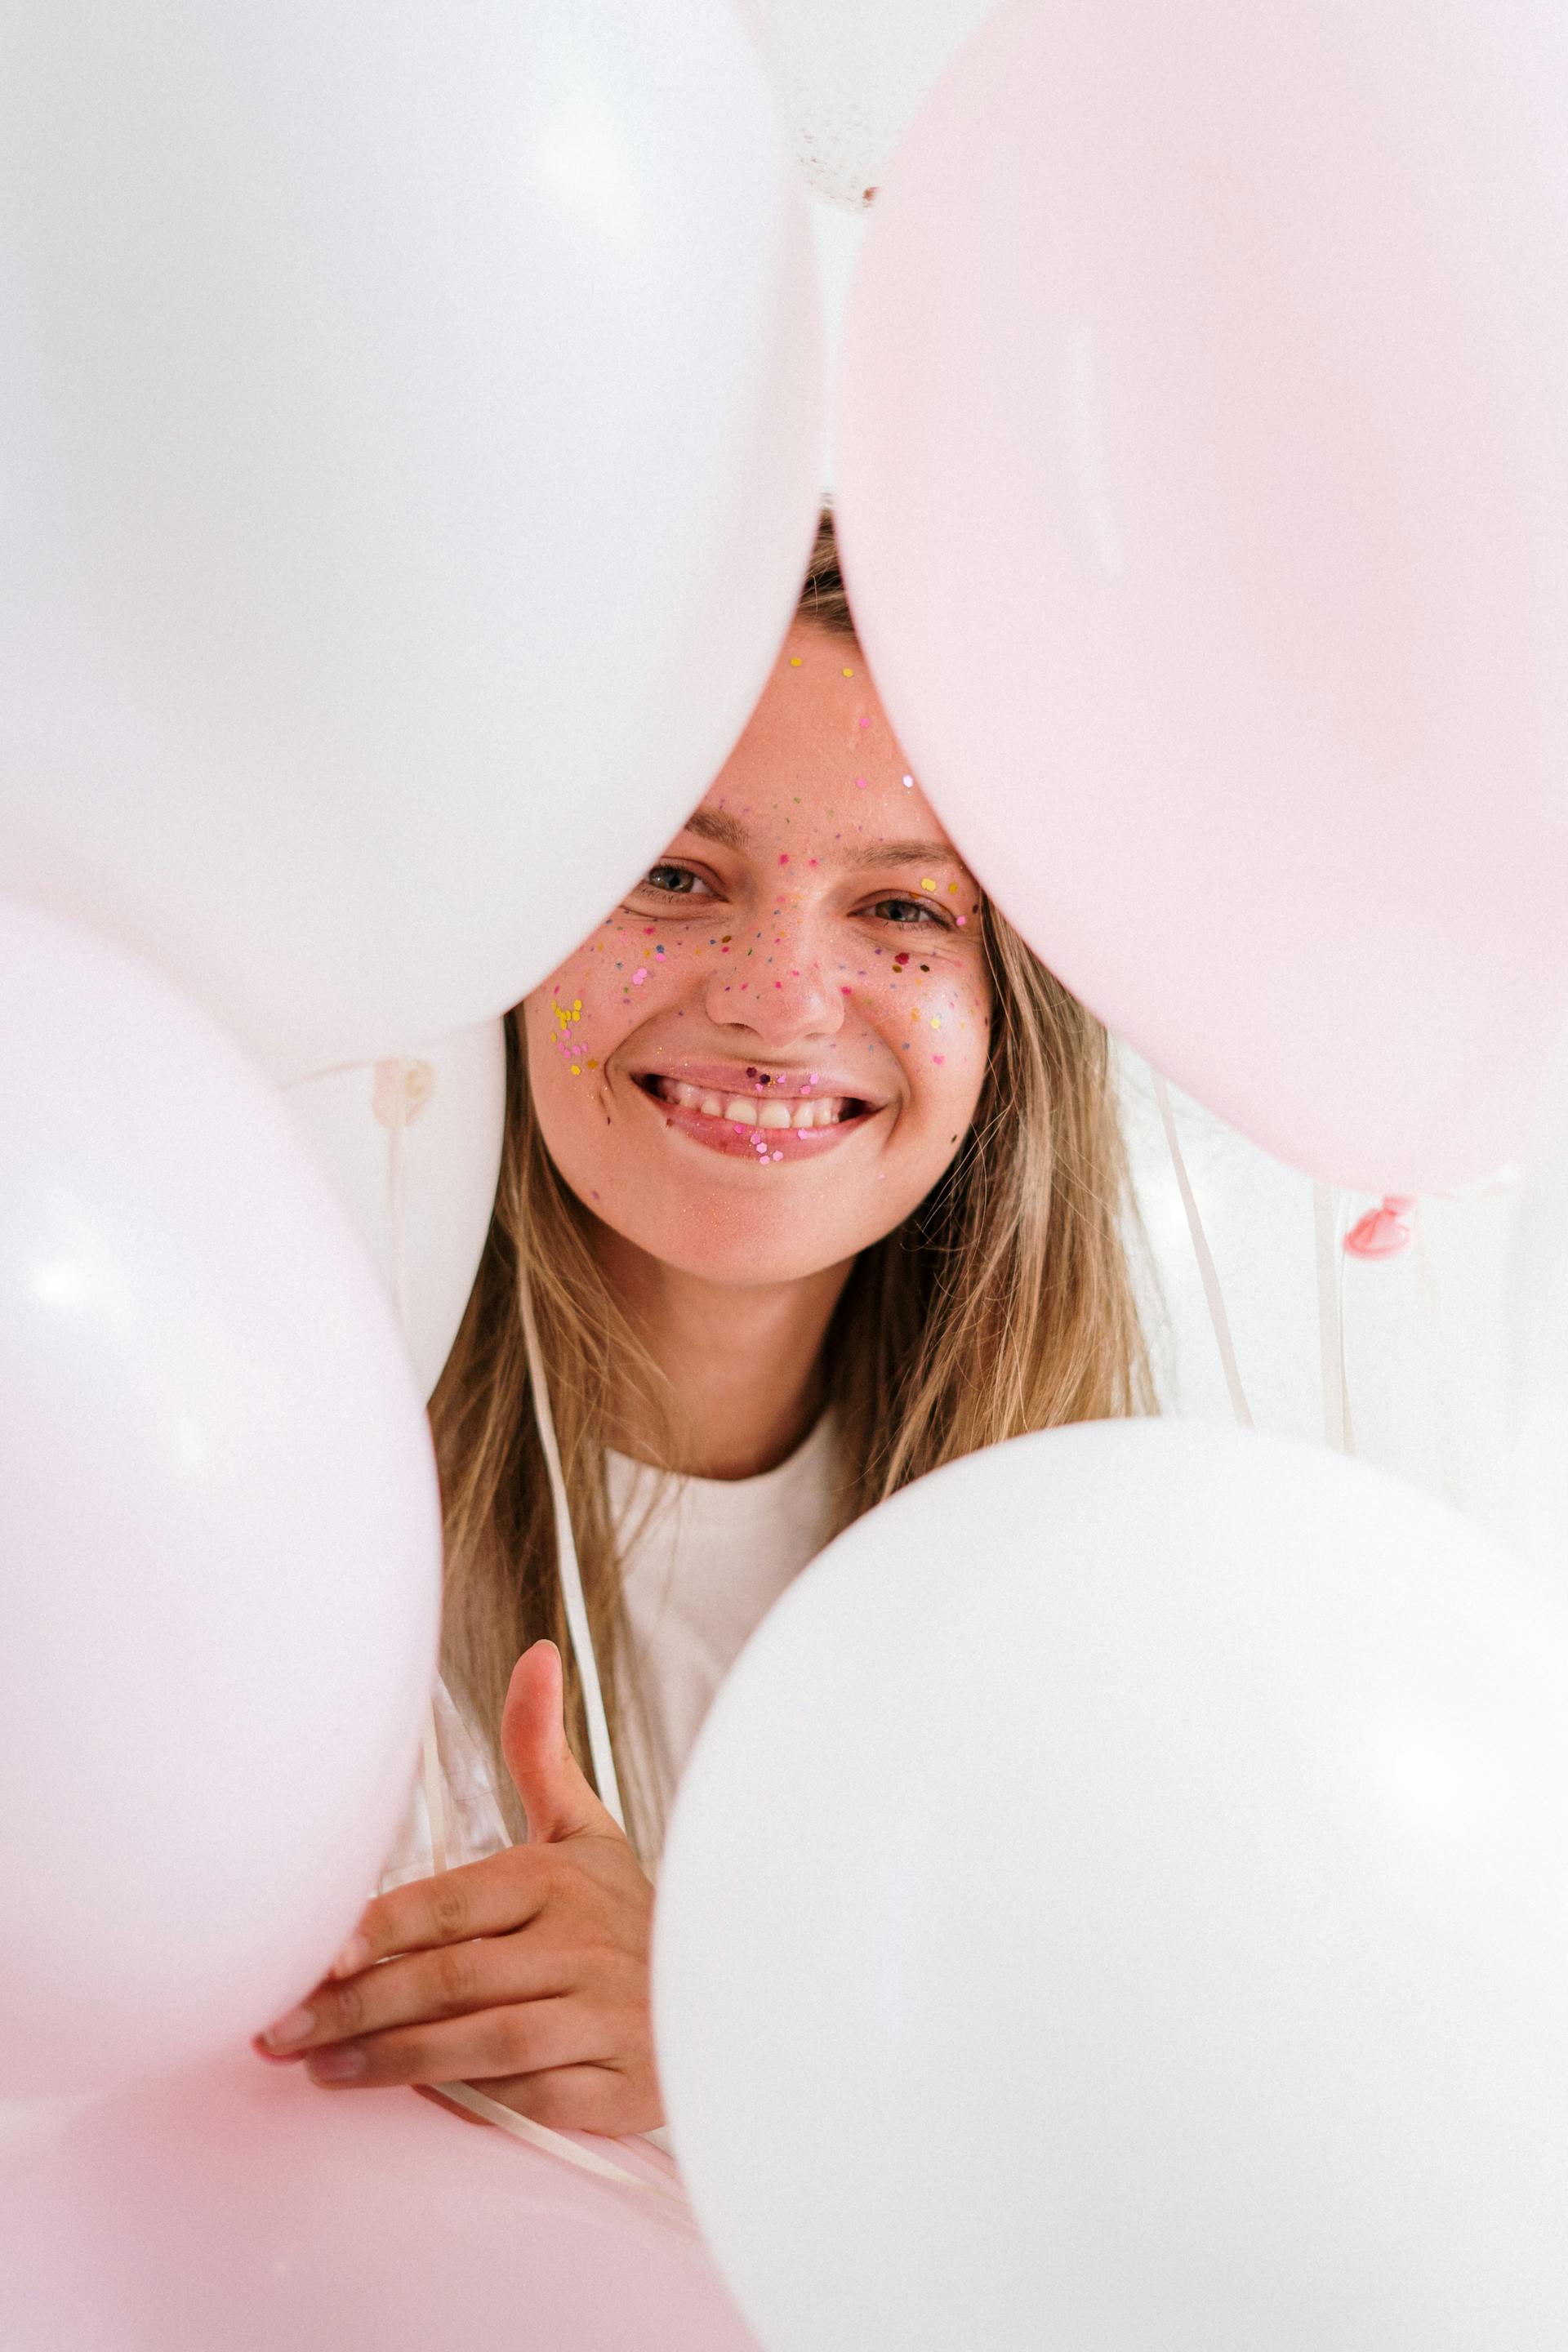 Una joven sonriente sujetando globos rosas y blancos | Fuente: Pexels